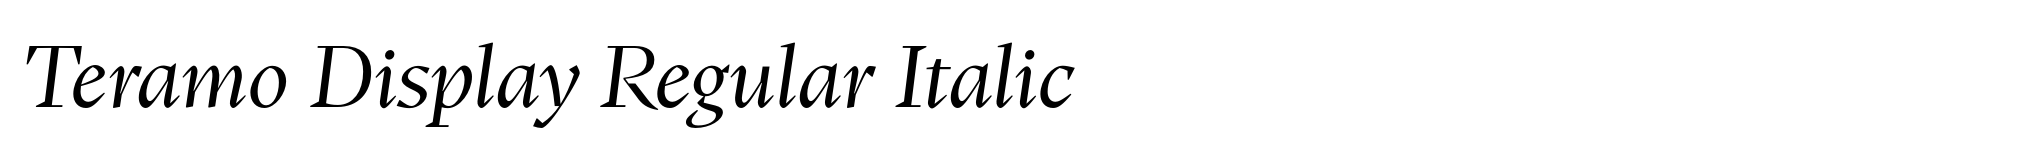 Teramo Display Regular Italic image